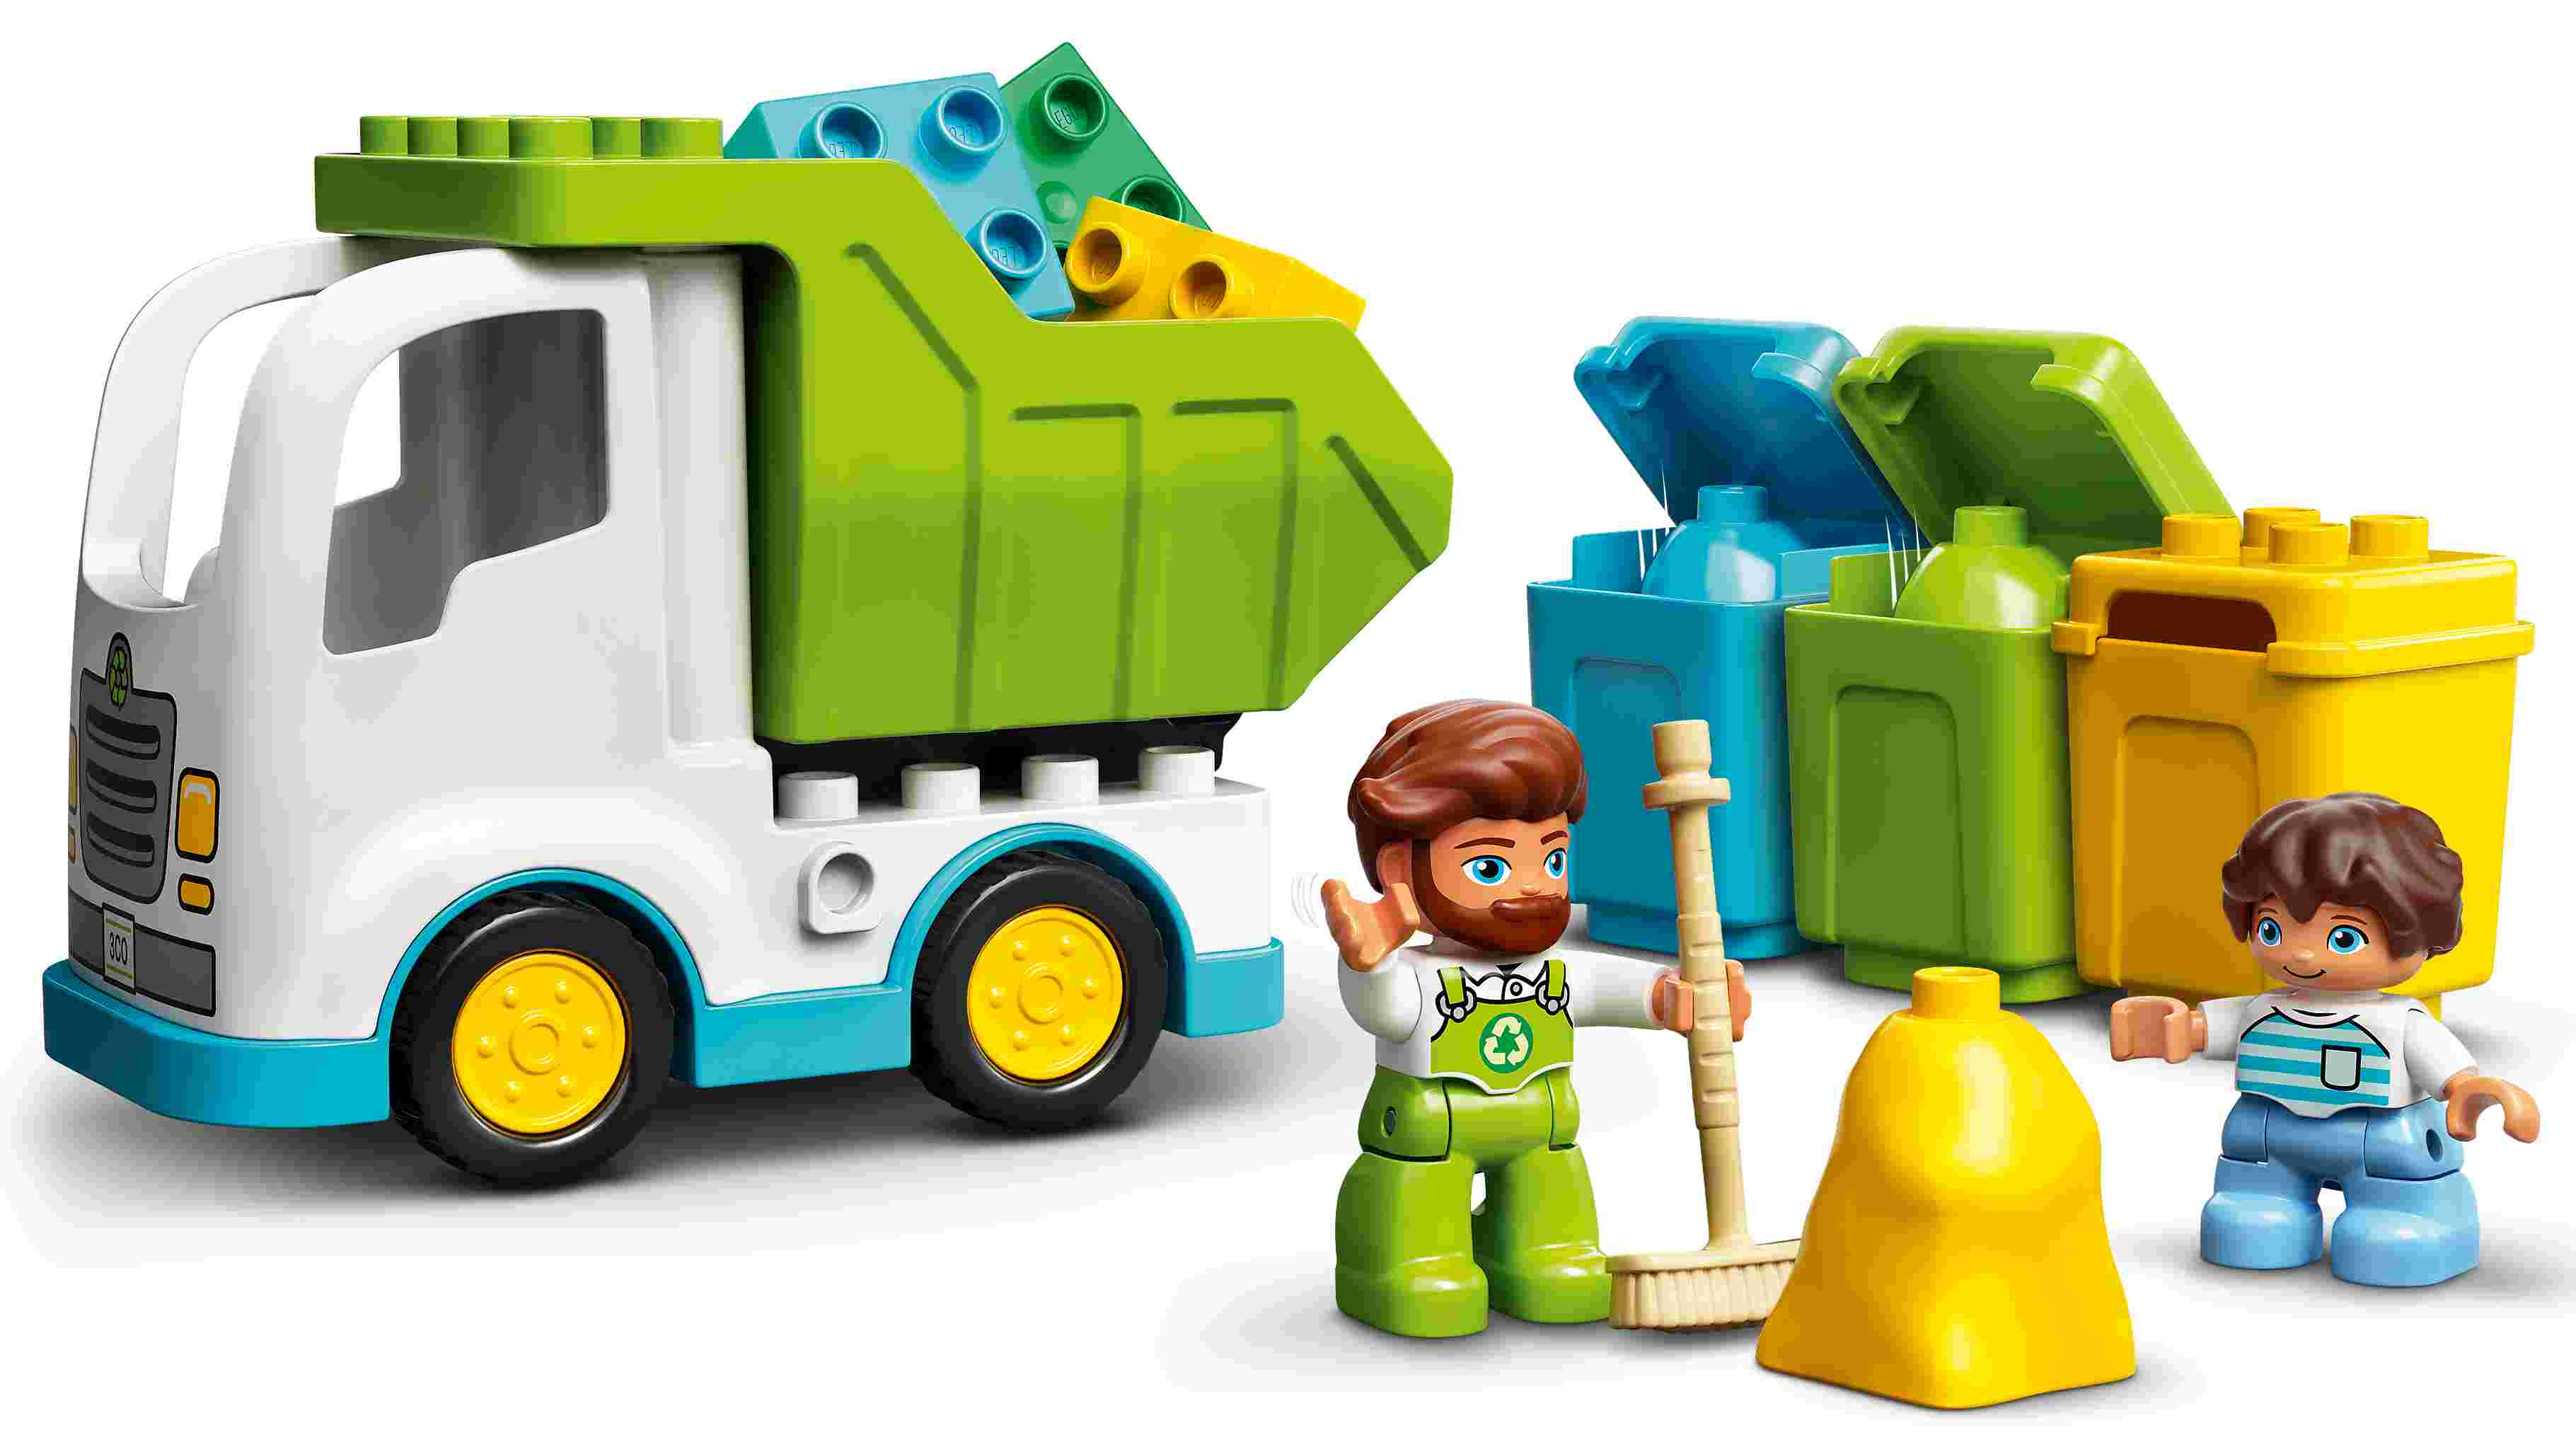 LEGO 10945 DUPLO Müllabfuhr und Wertstoffhof, Müllauto, 3 Wertstofftonnen